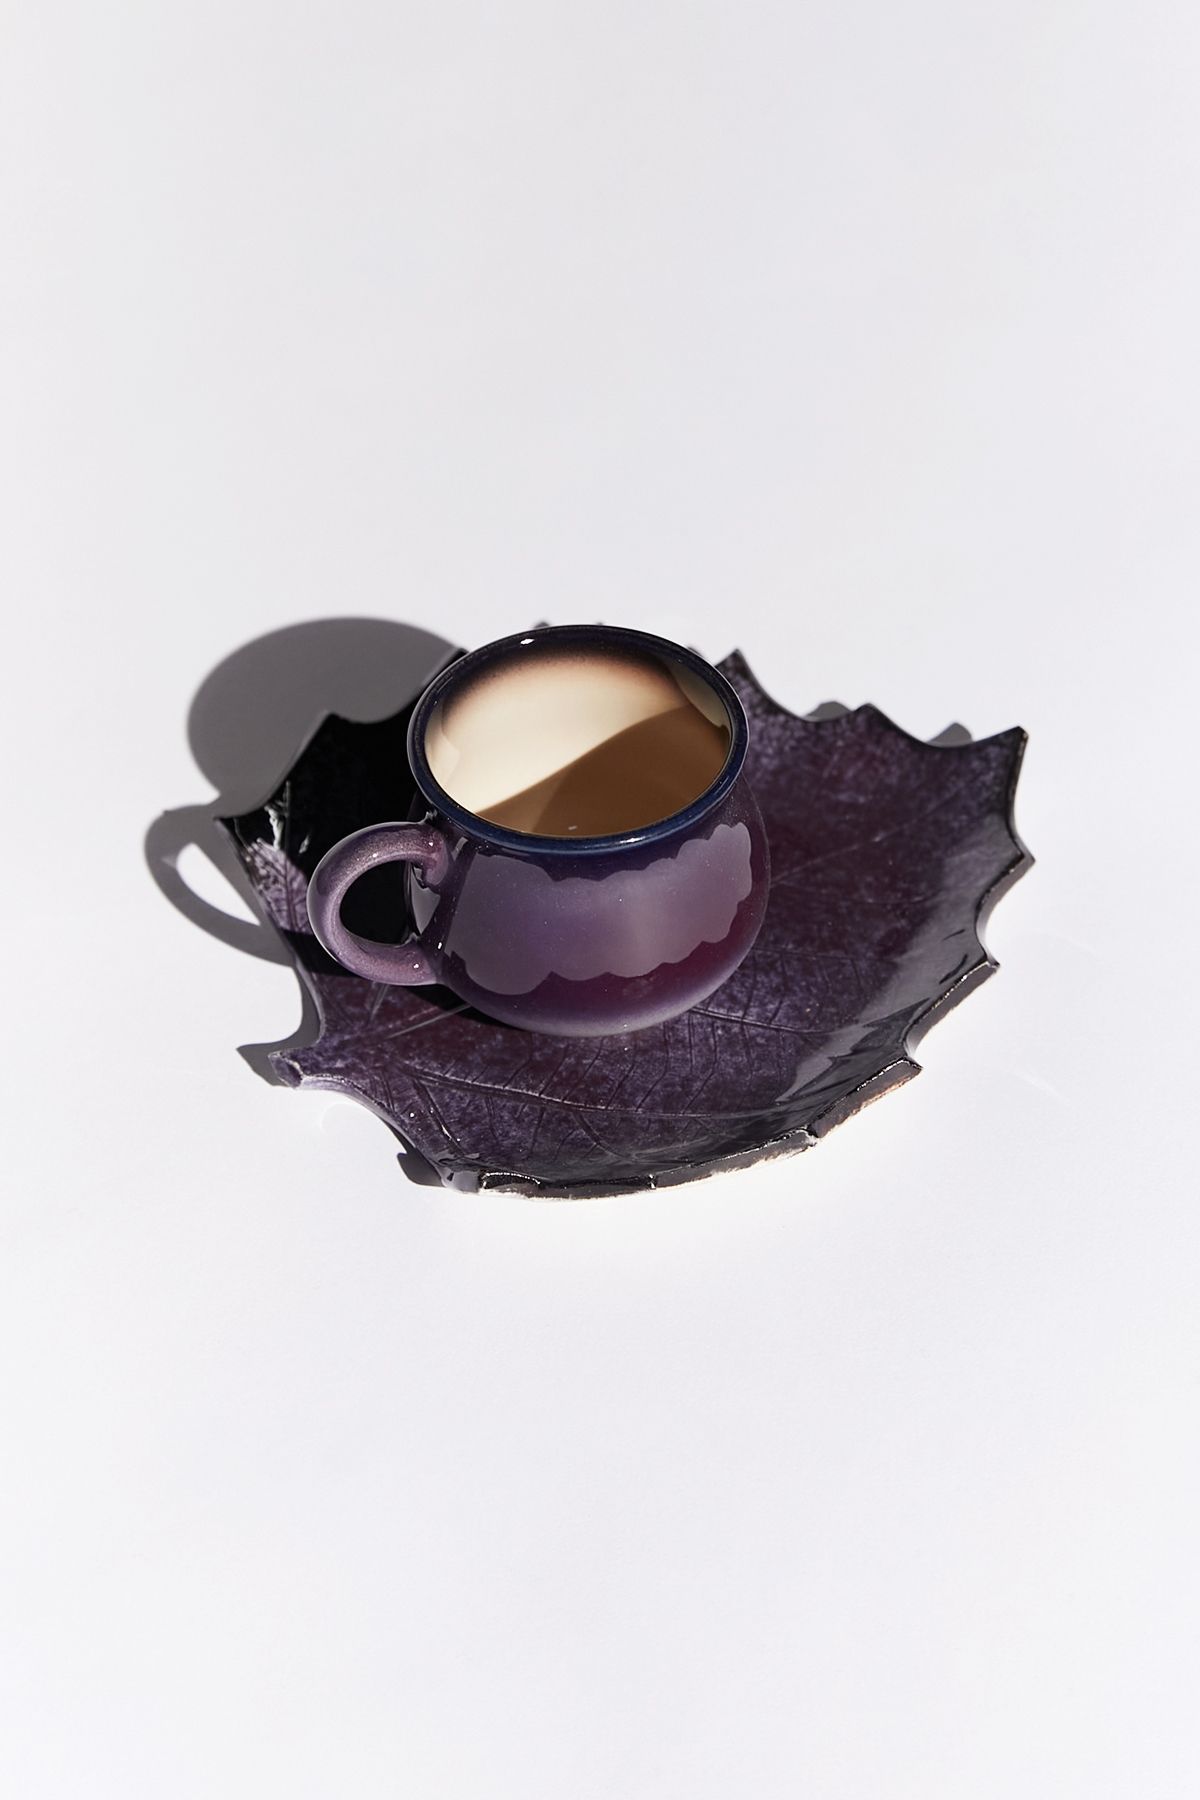 Loomart Dekoratif Dut Yaprak Tasarımlı El Yapımı Seramik Tek Kişilik Kahve Fincanı Seti - Mor